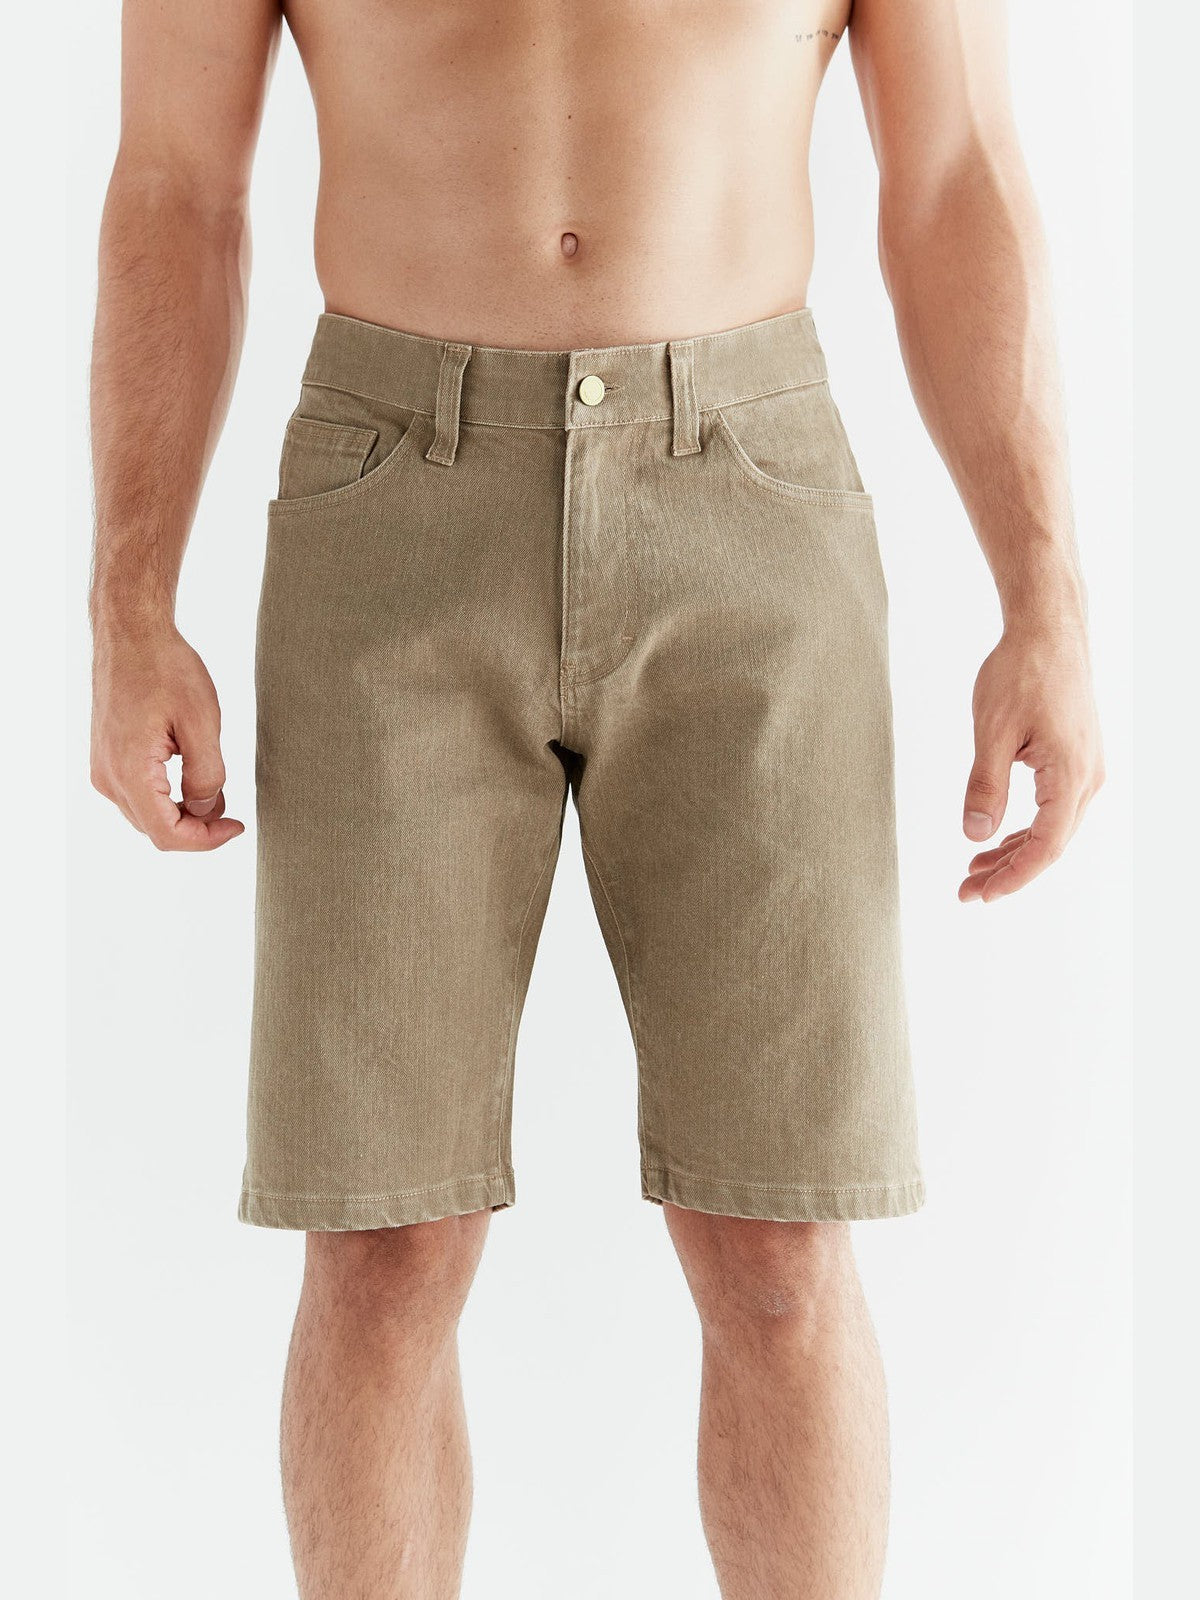 MA3018-403 | Herren Denim Shorts in Ton Waschung - Caribe